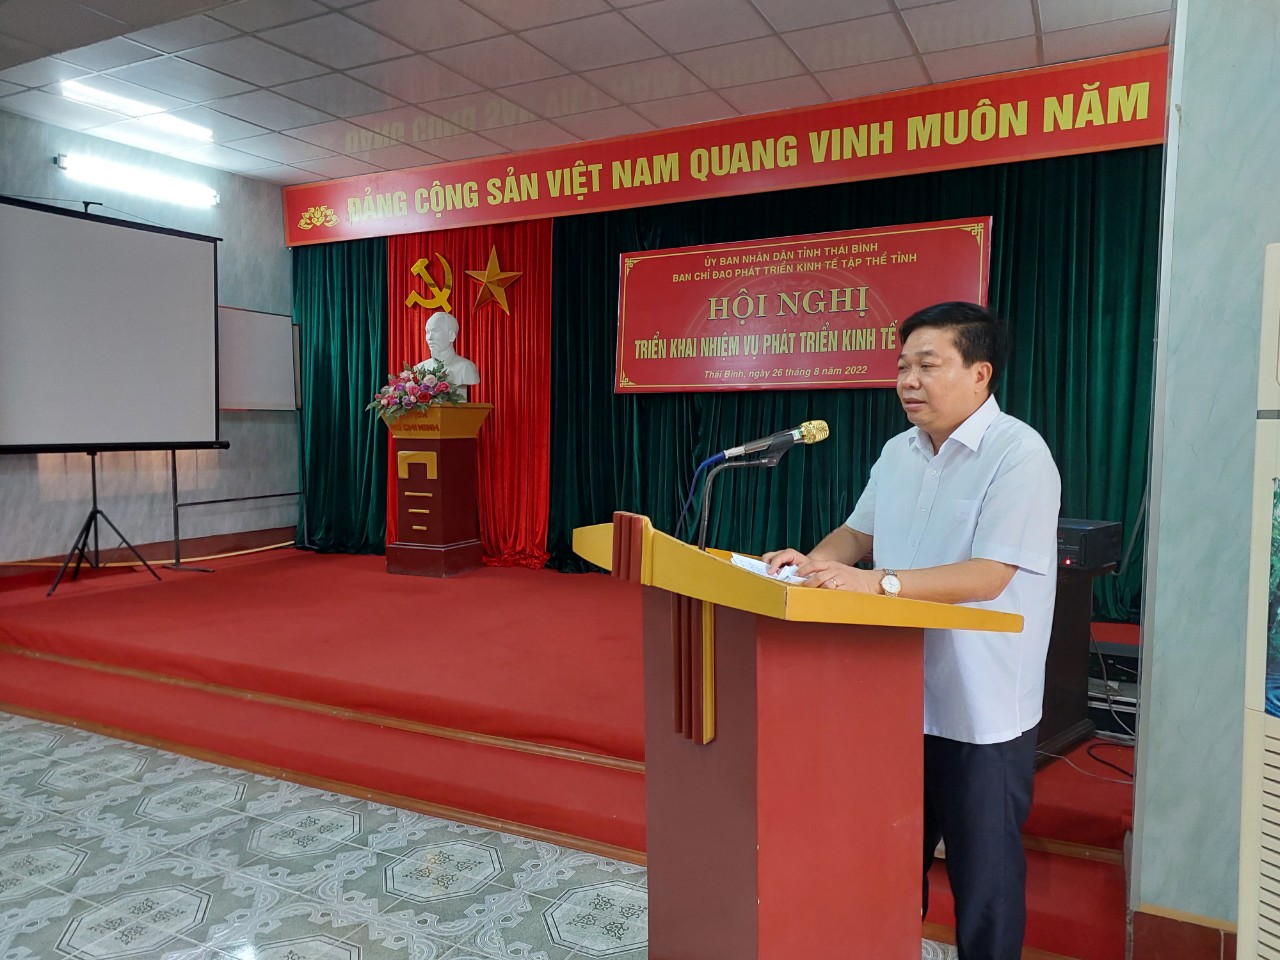 Liên minh Hợp tác xã tỉnh Thái Bình tổ chức Hội nghị triển khai nhiệm vụ phát triển kinh tế tập thể 6 tháng cuối năm